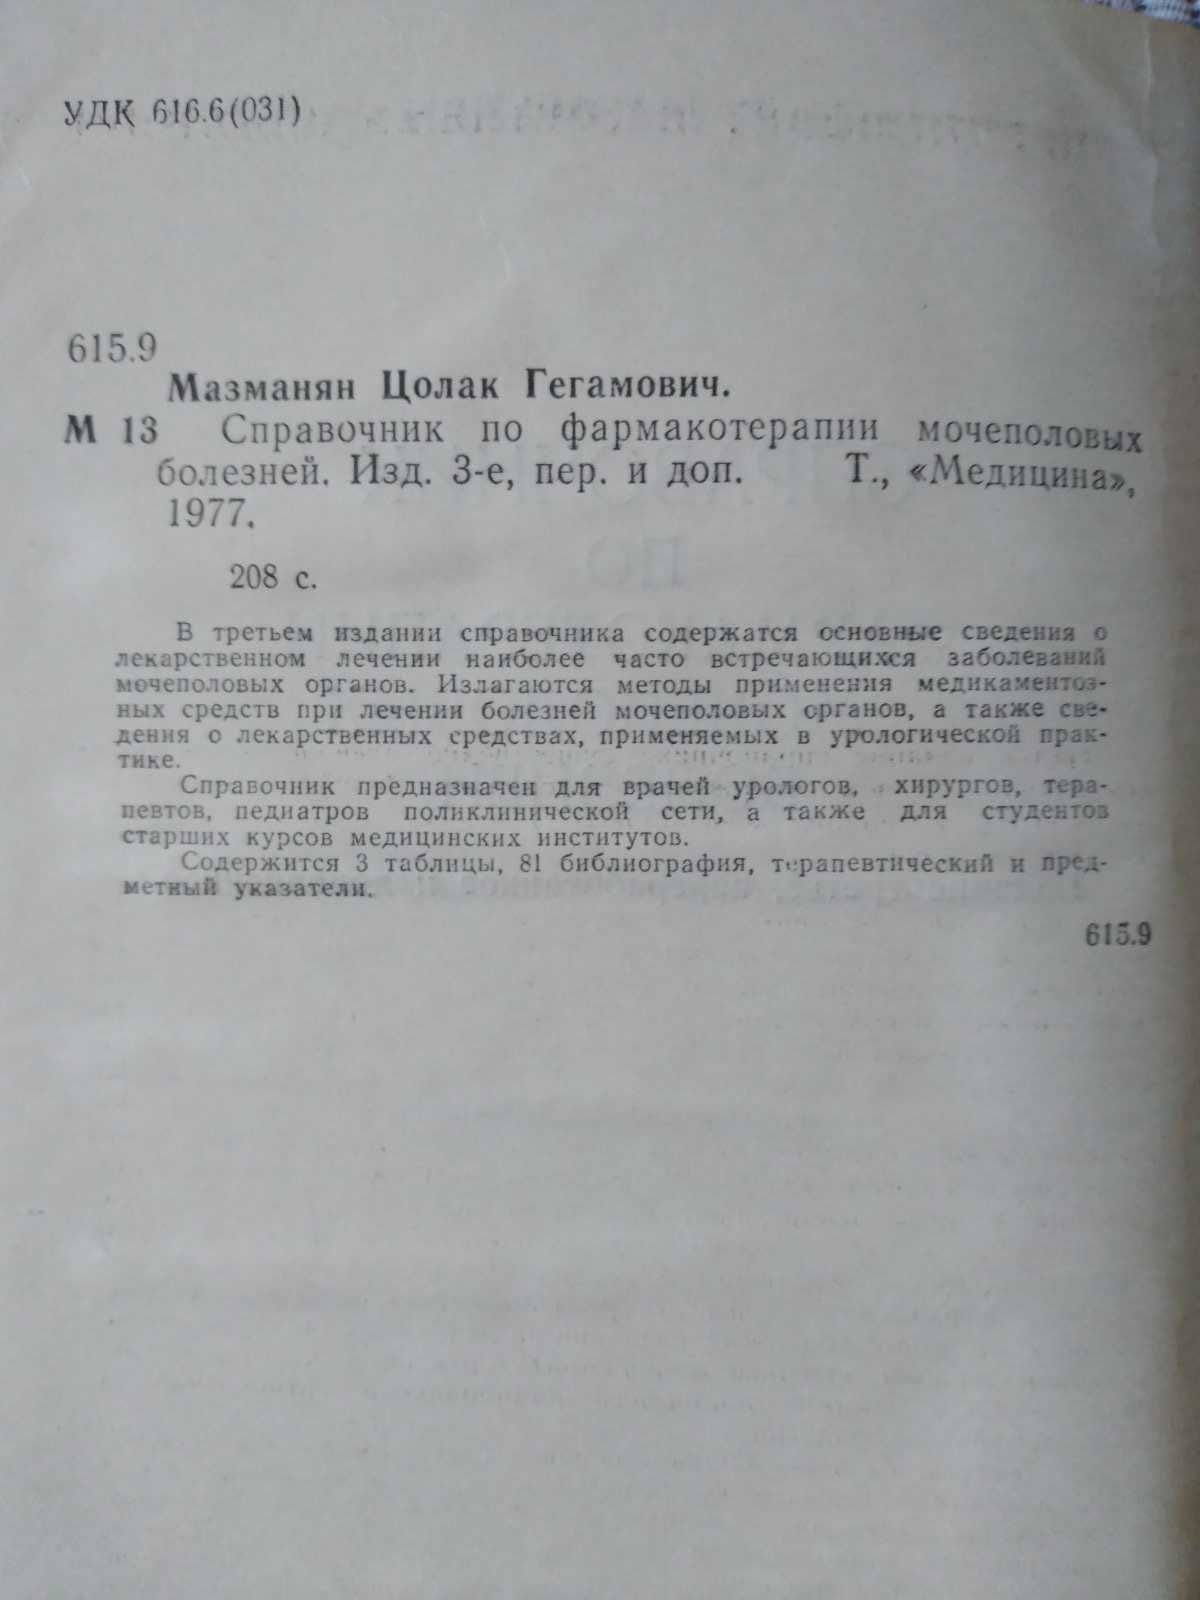 Справочник по фармакотерапии мочеполовых болезней. Мазманян, 1977